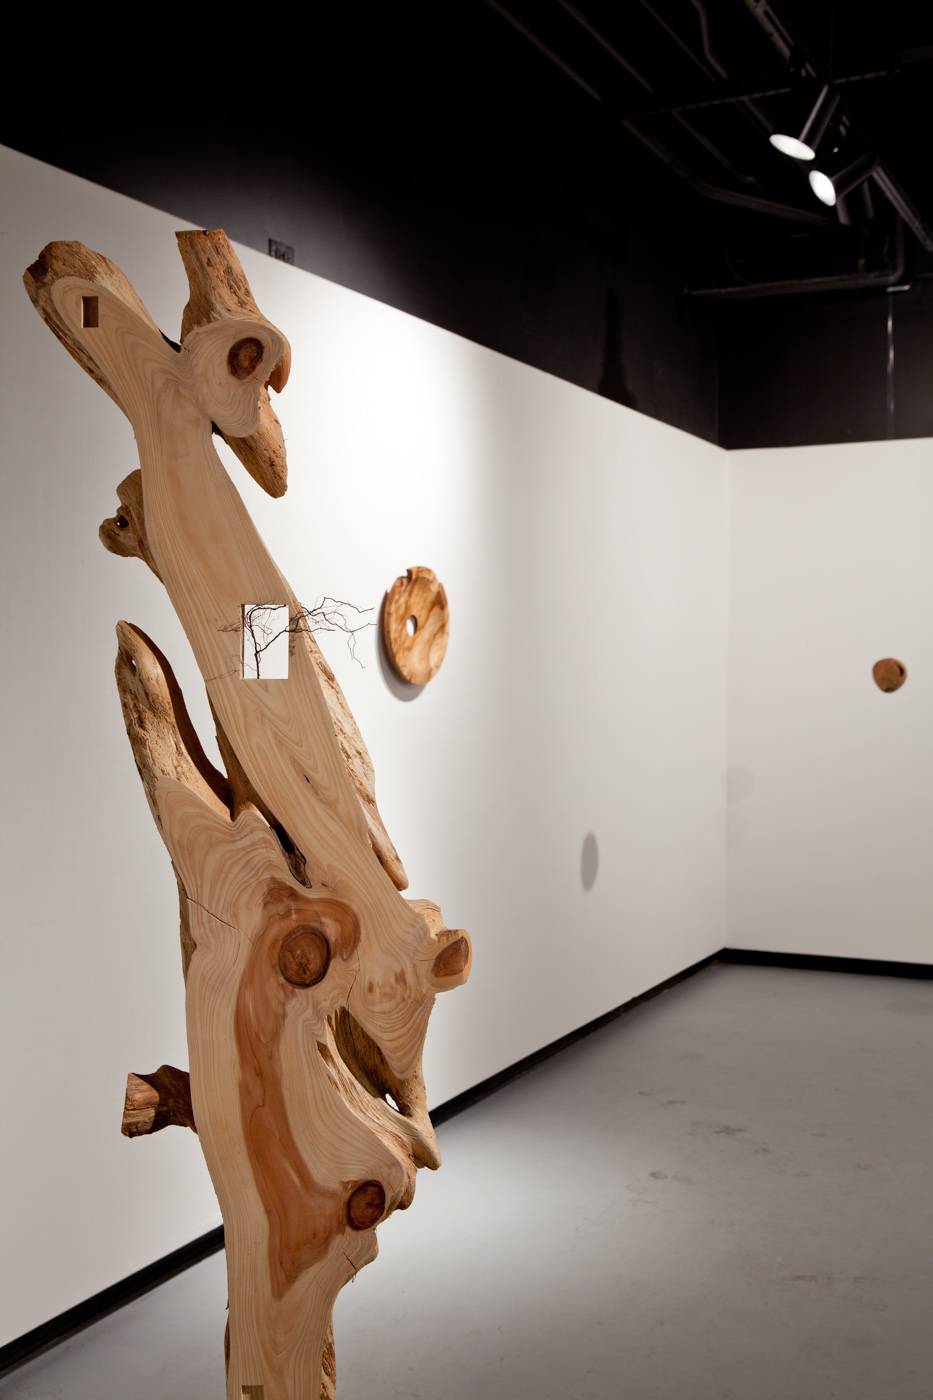 Sculpture installation by artist Rebecca Homapour